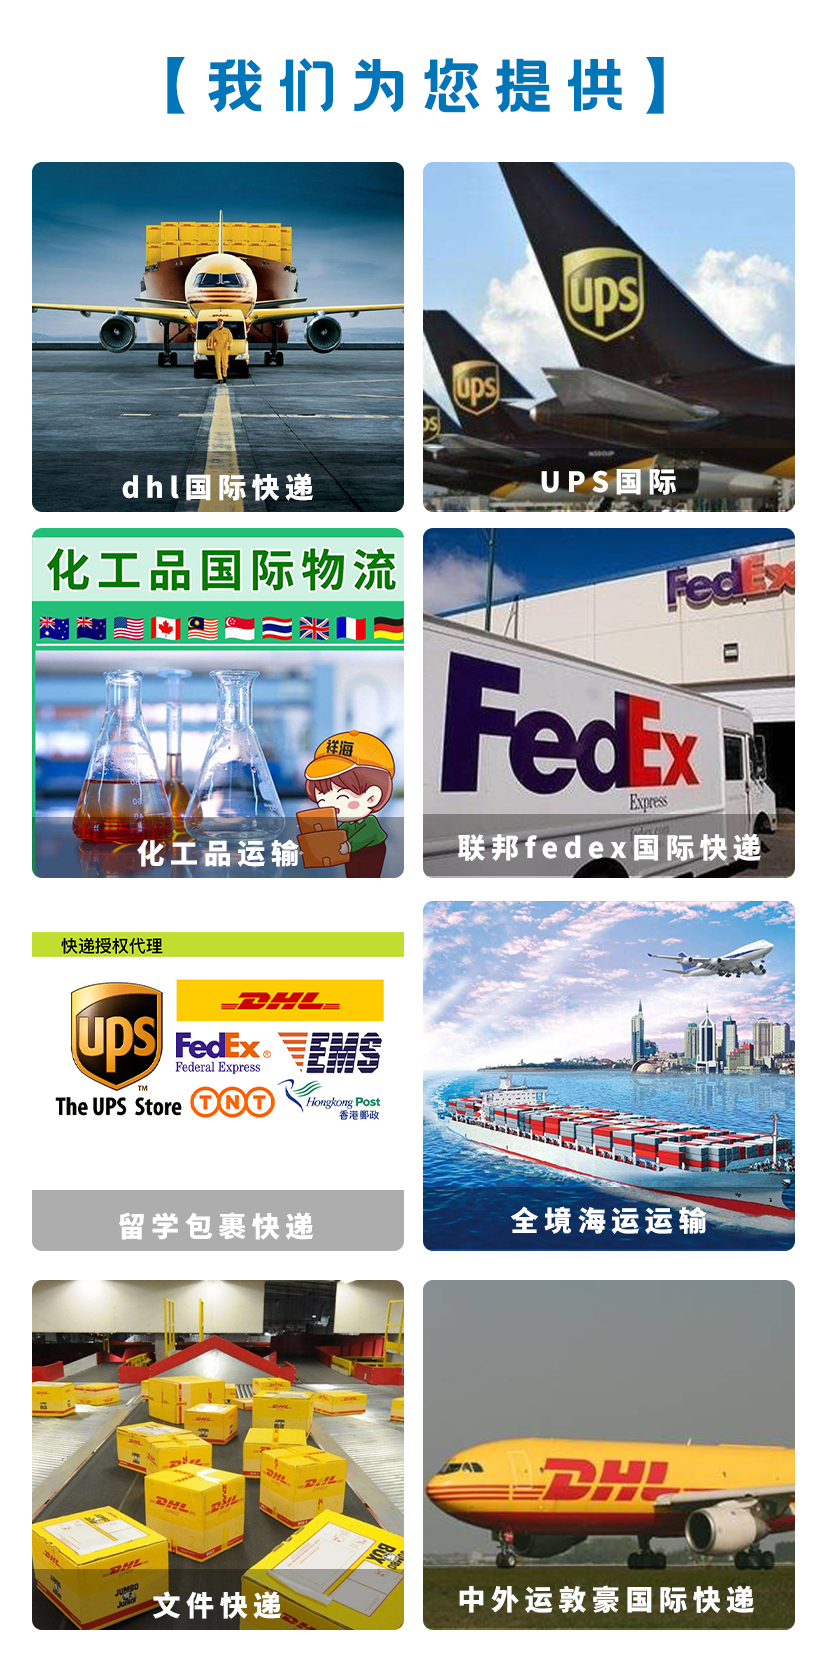 北京DHL电话-UPS国际快递电话-联邦快递服务电话